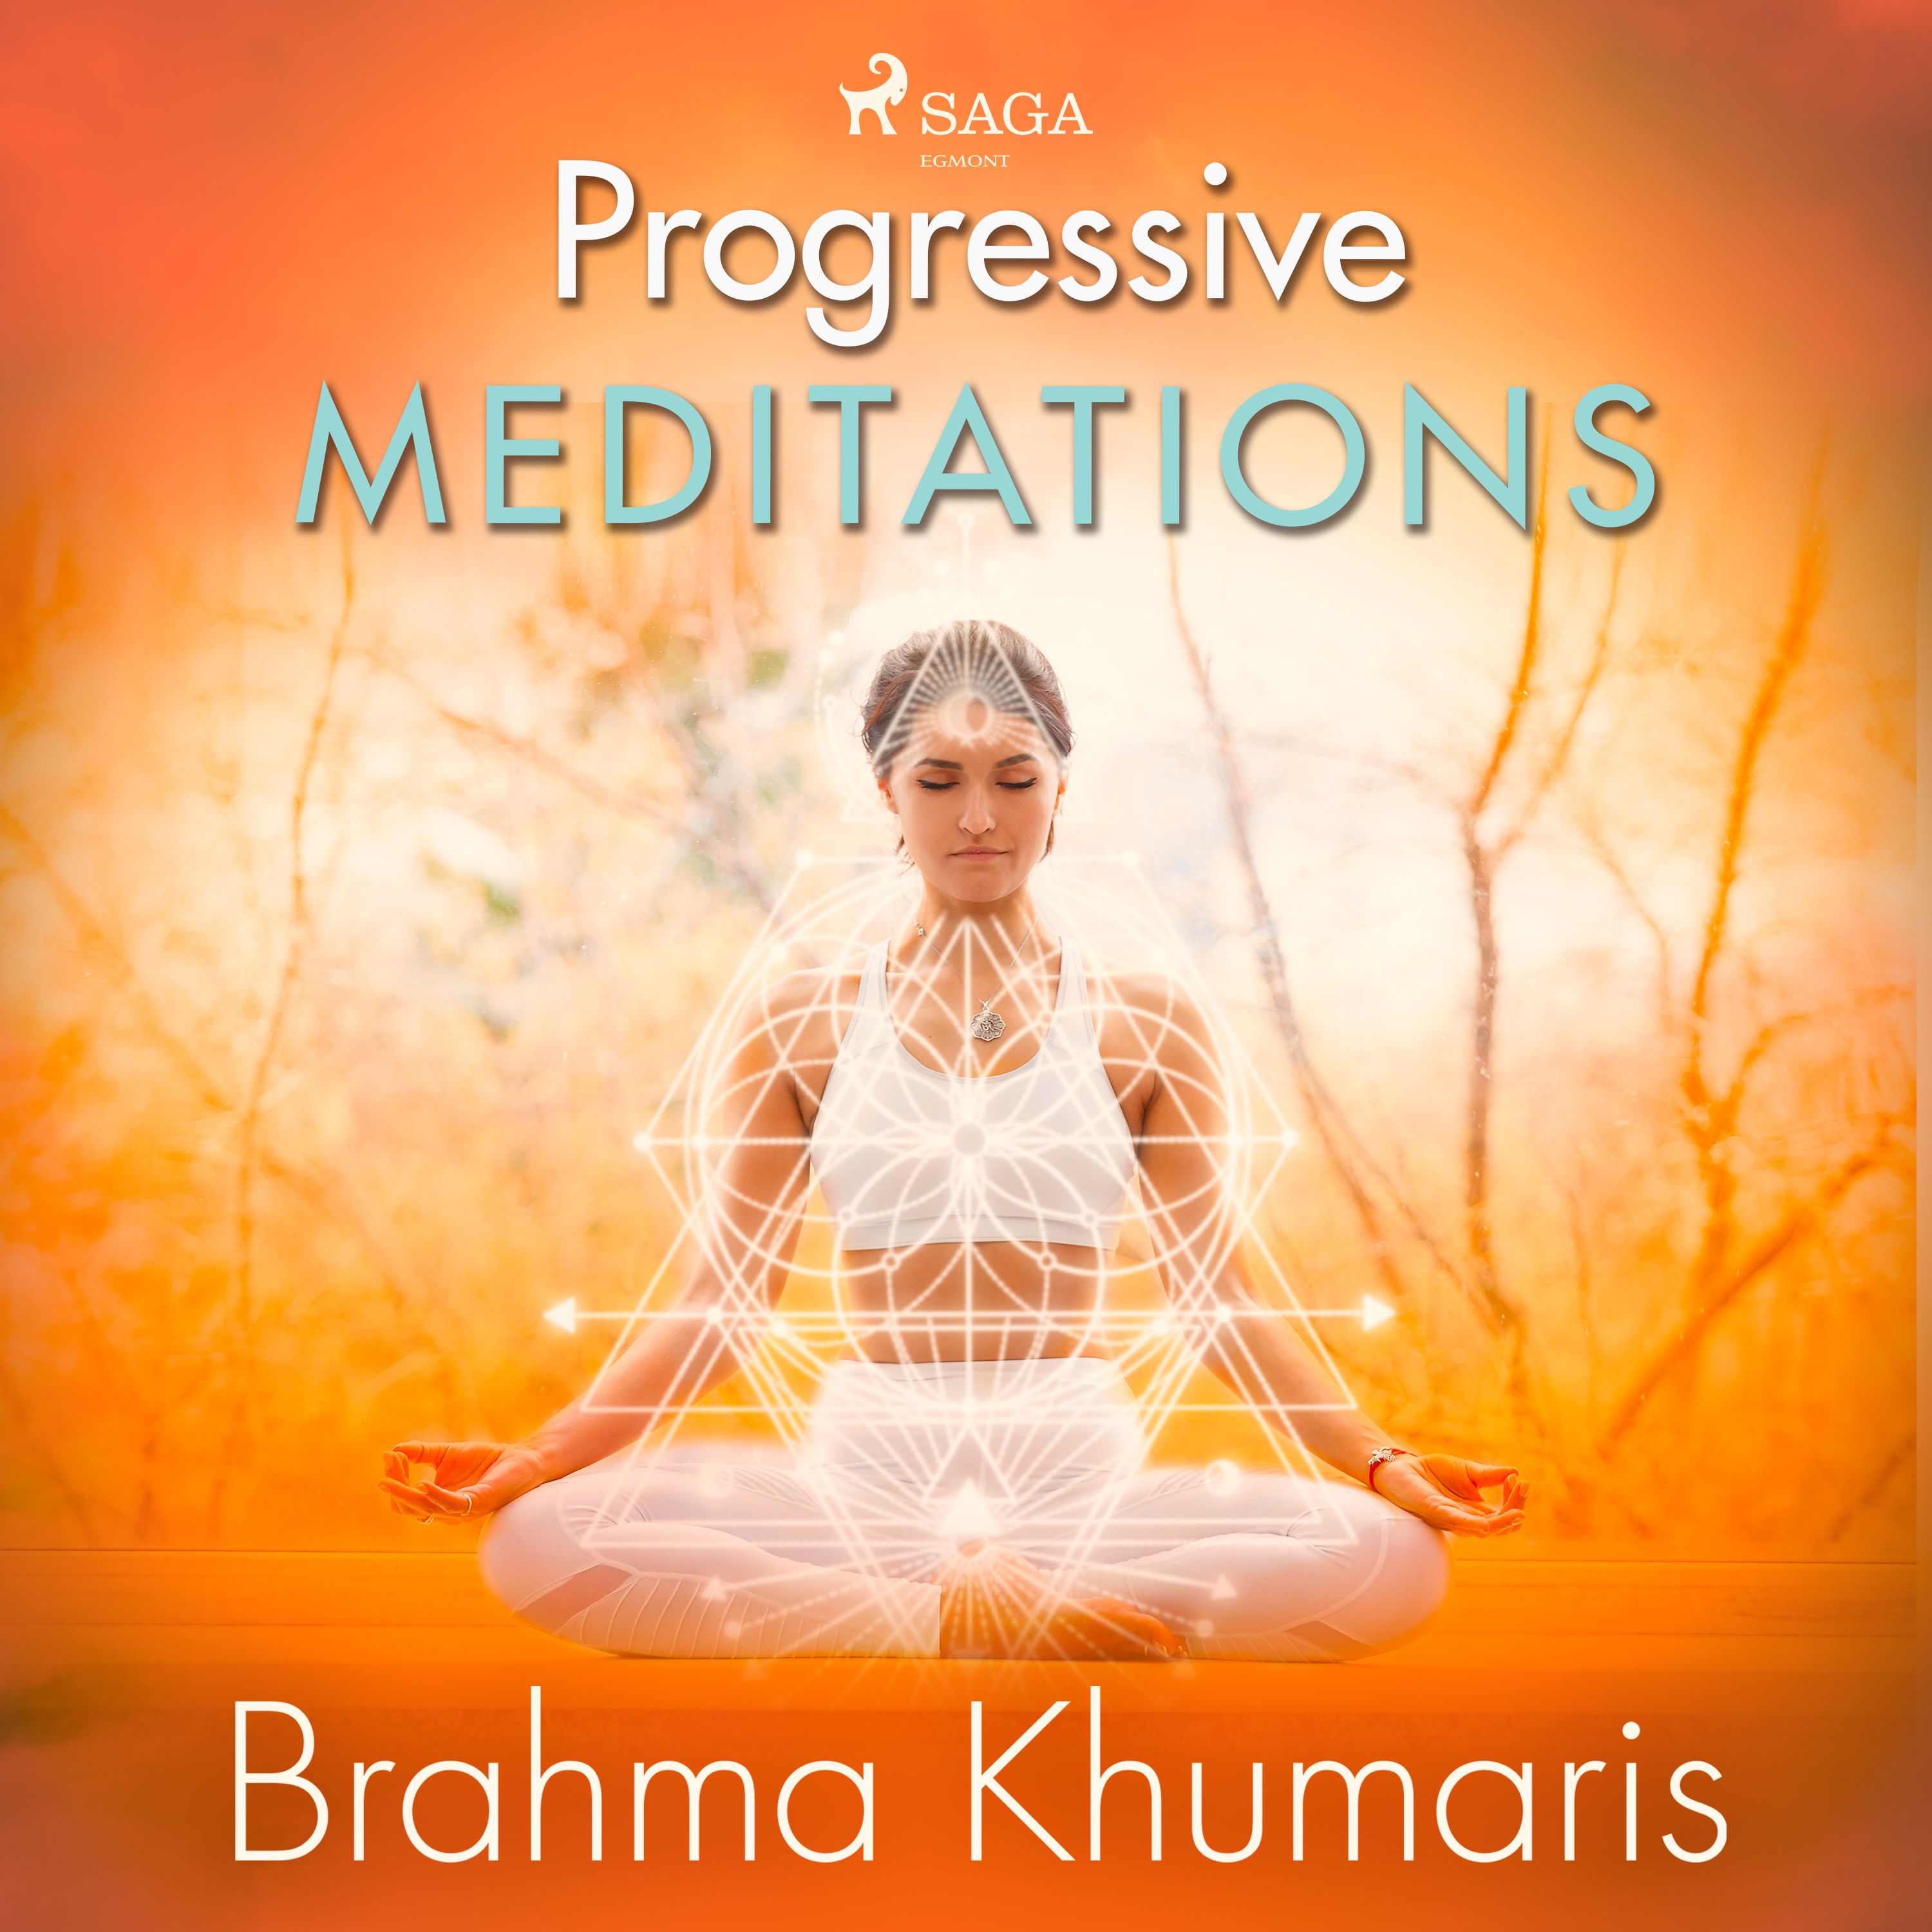 Progressive Meditations, lydbog af Brahma Khumaris